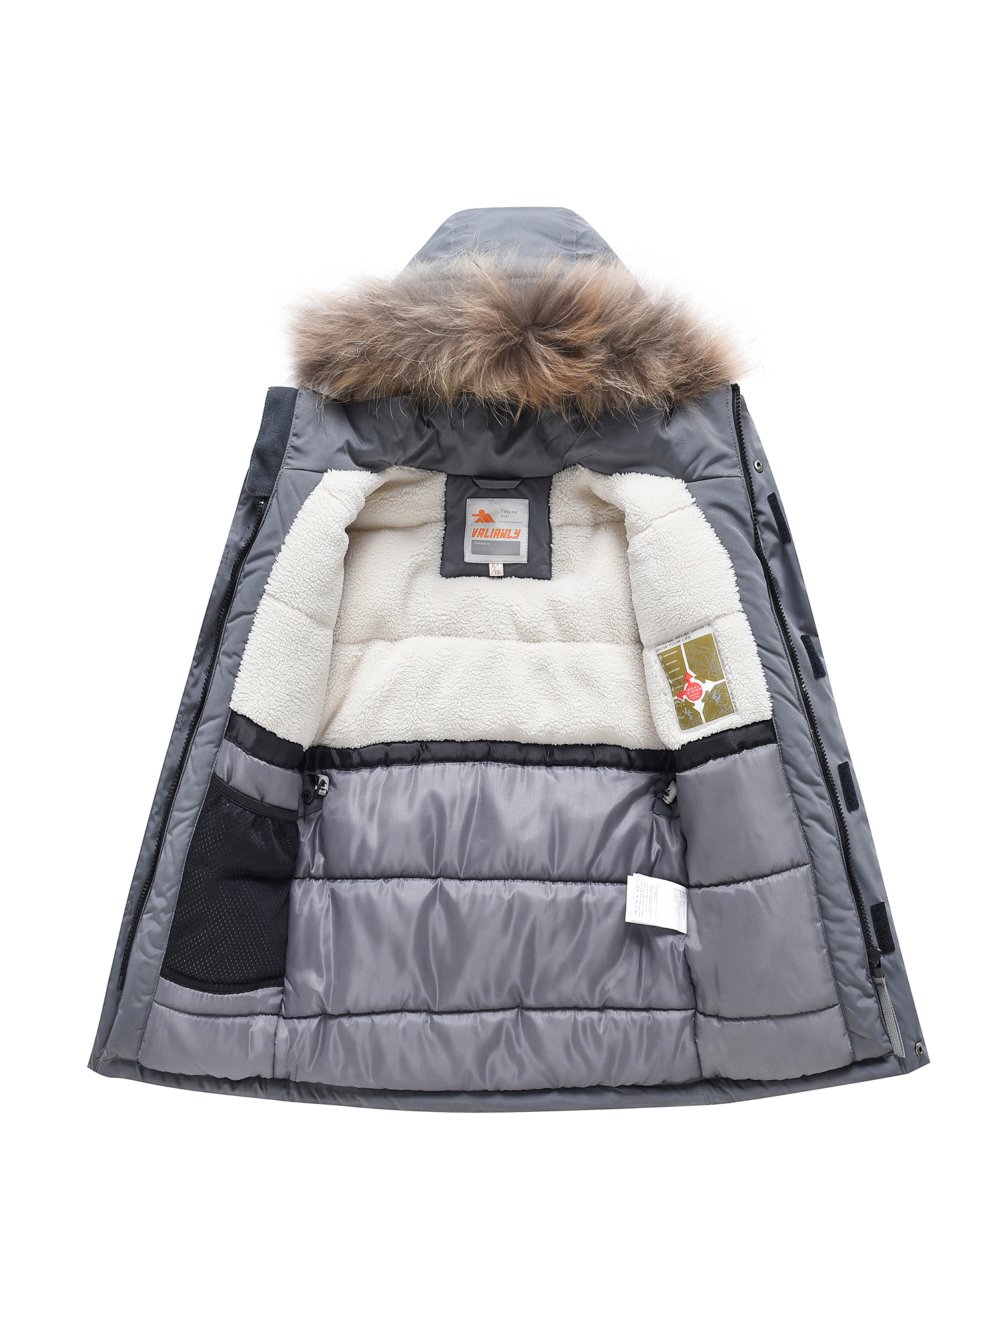 Купить куртку парку для мальчика оптом от производителя недорого в Москве 9331Sr 1